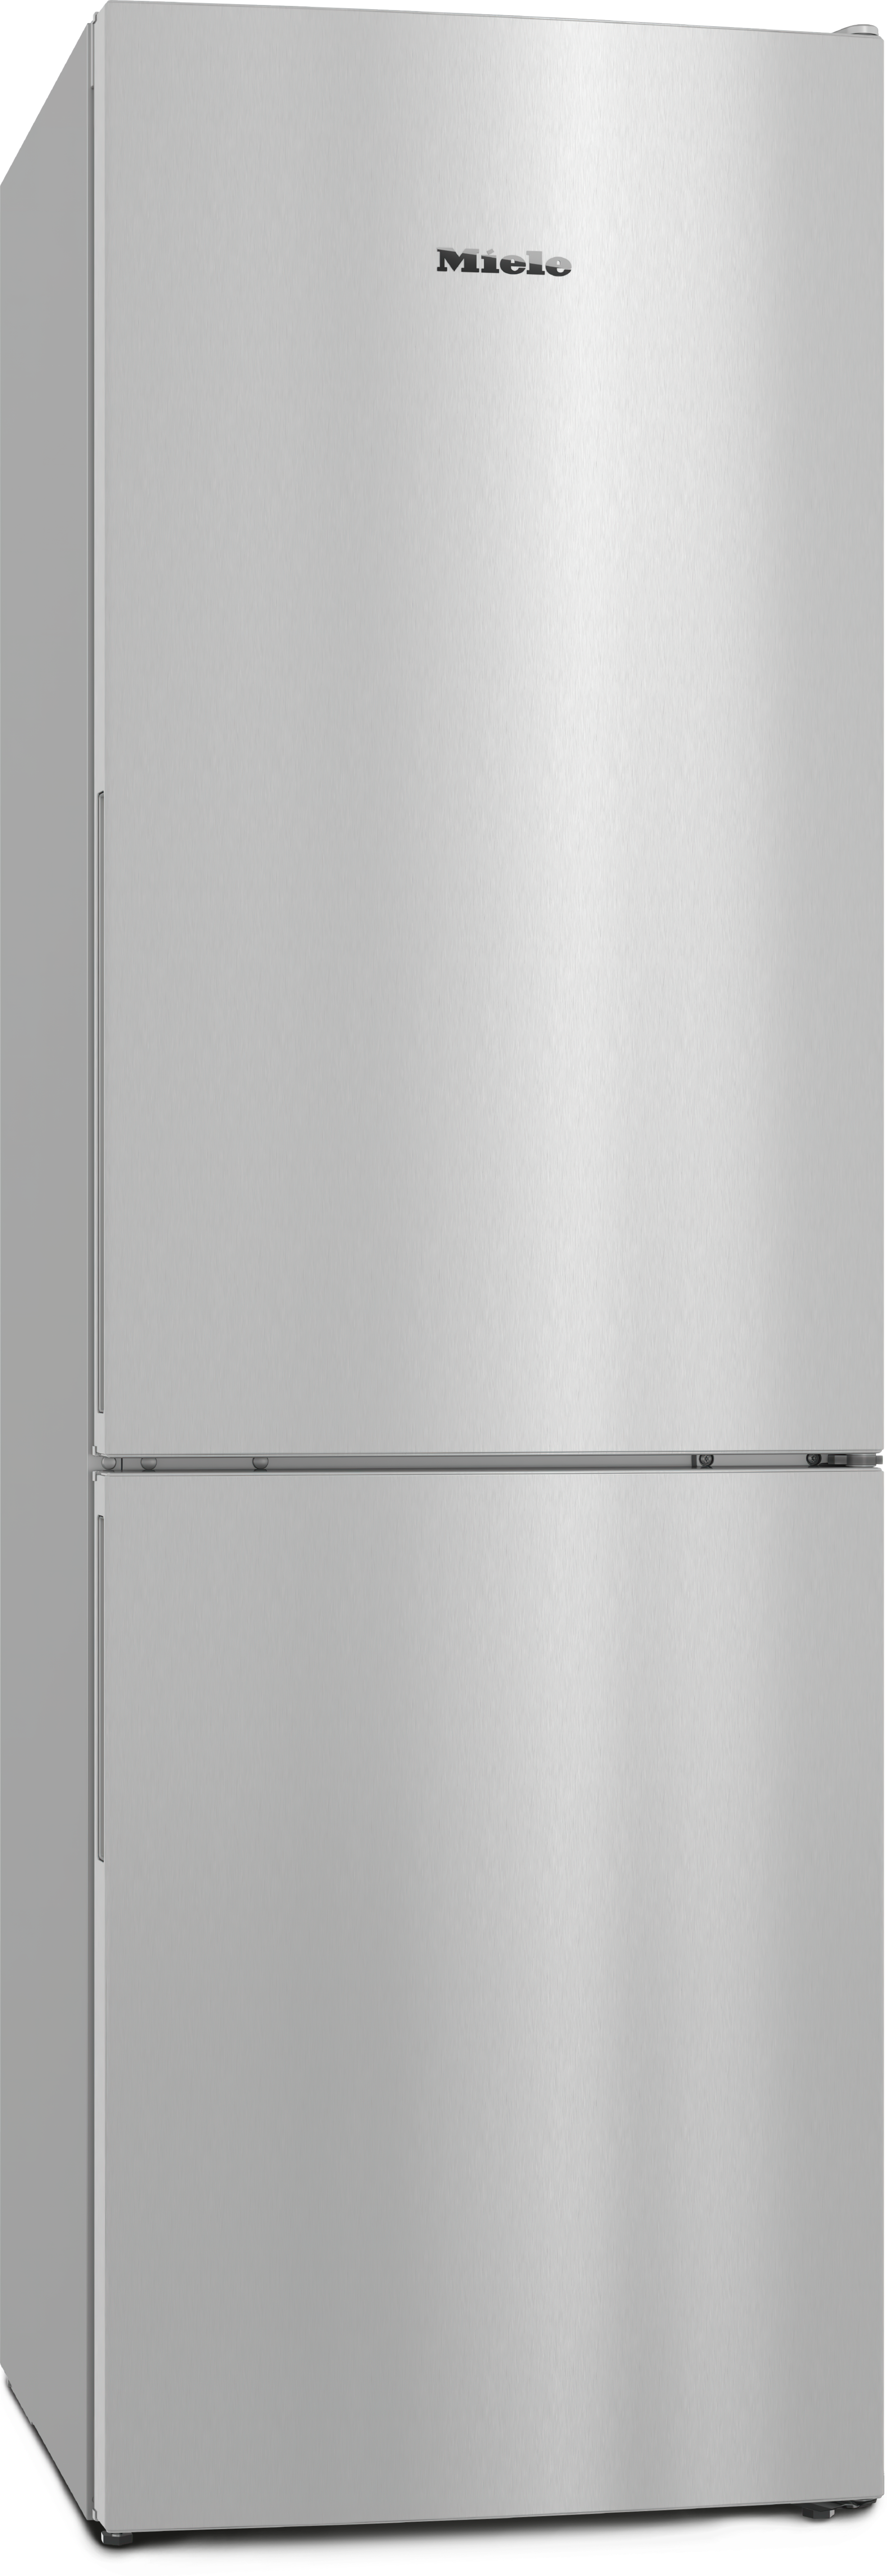 Refrigerare - KD 4072 E Active Aspect de inox - 1